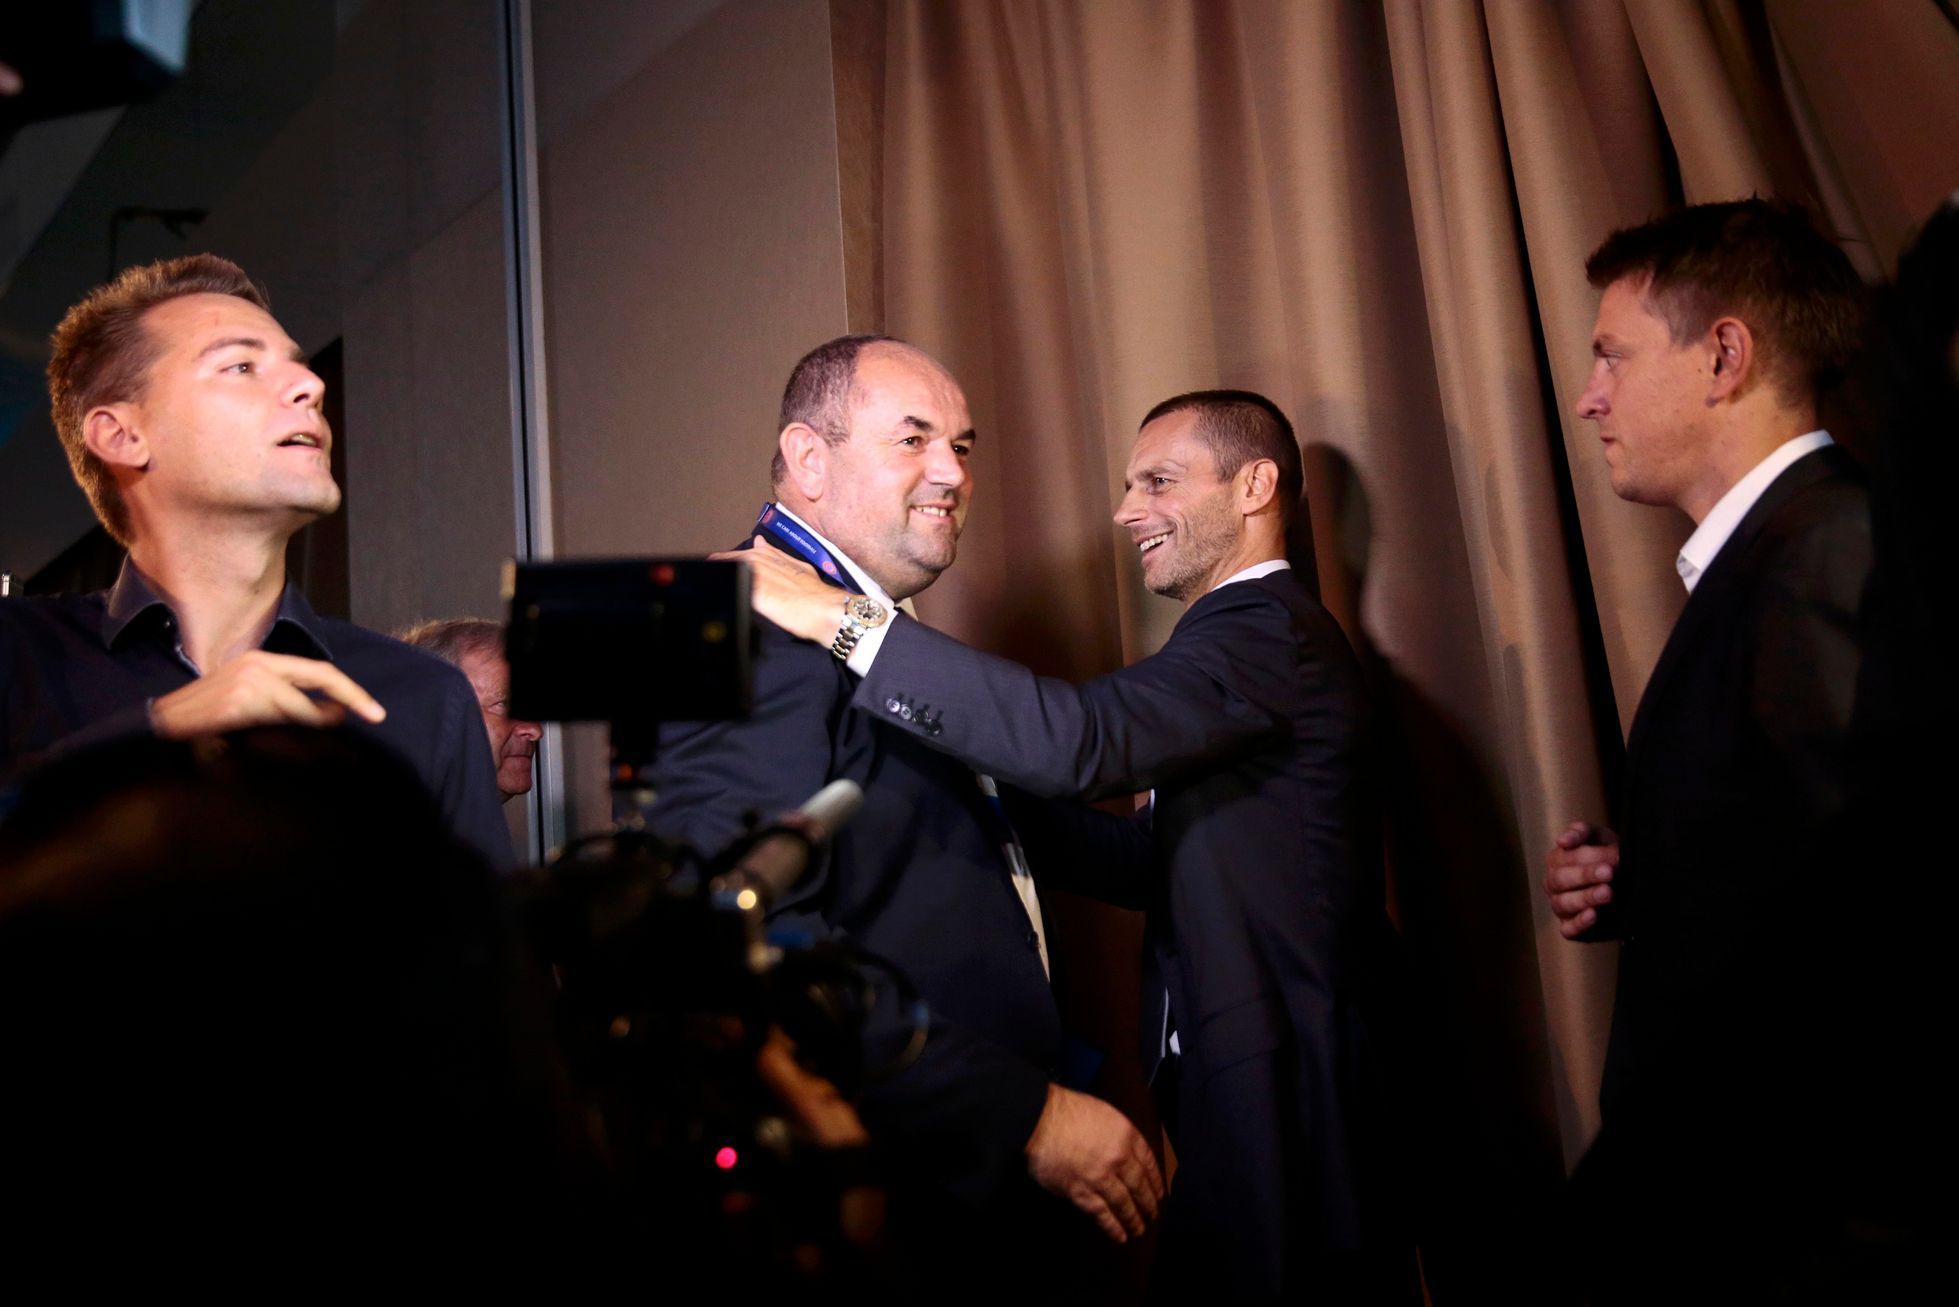 Miroslav pelta a Aleksandar Čeferin na volebním kongresu UEFA 2016